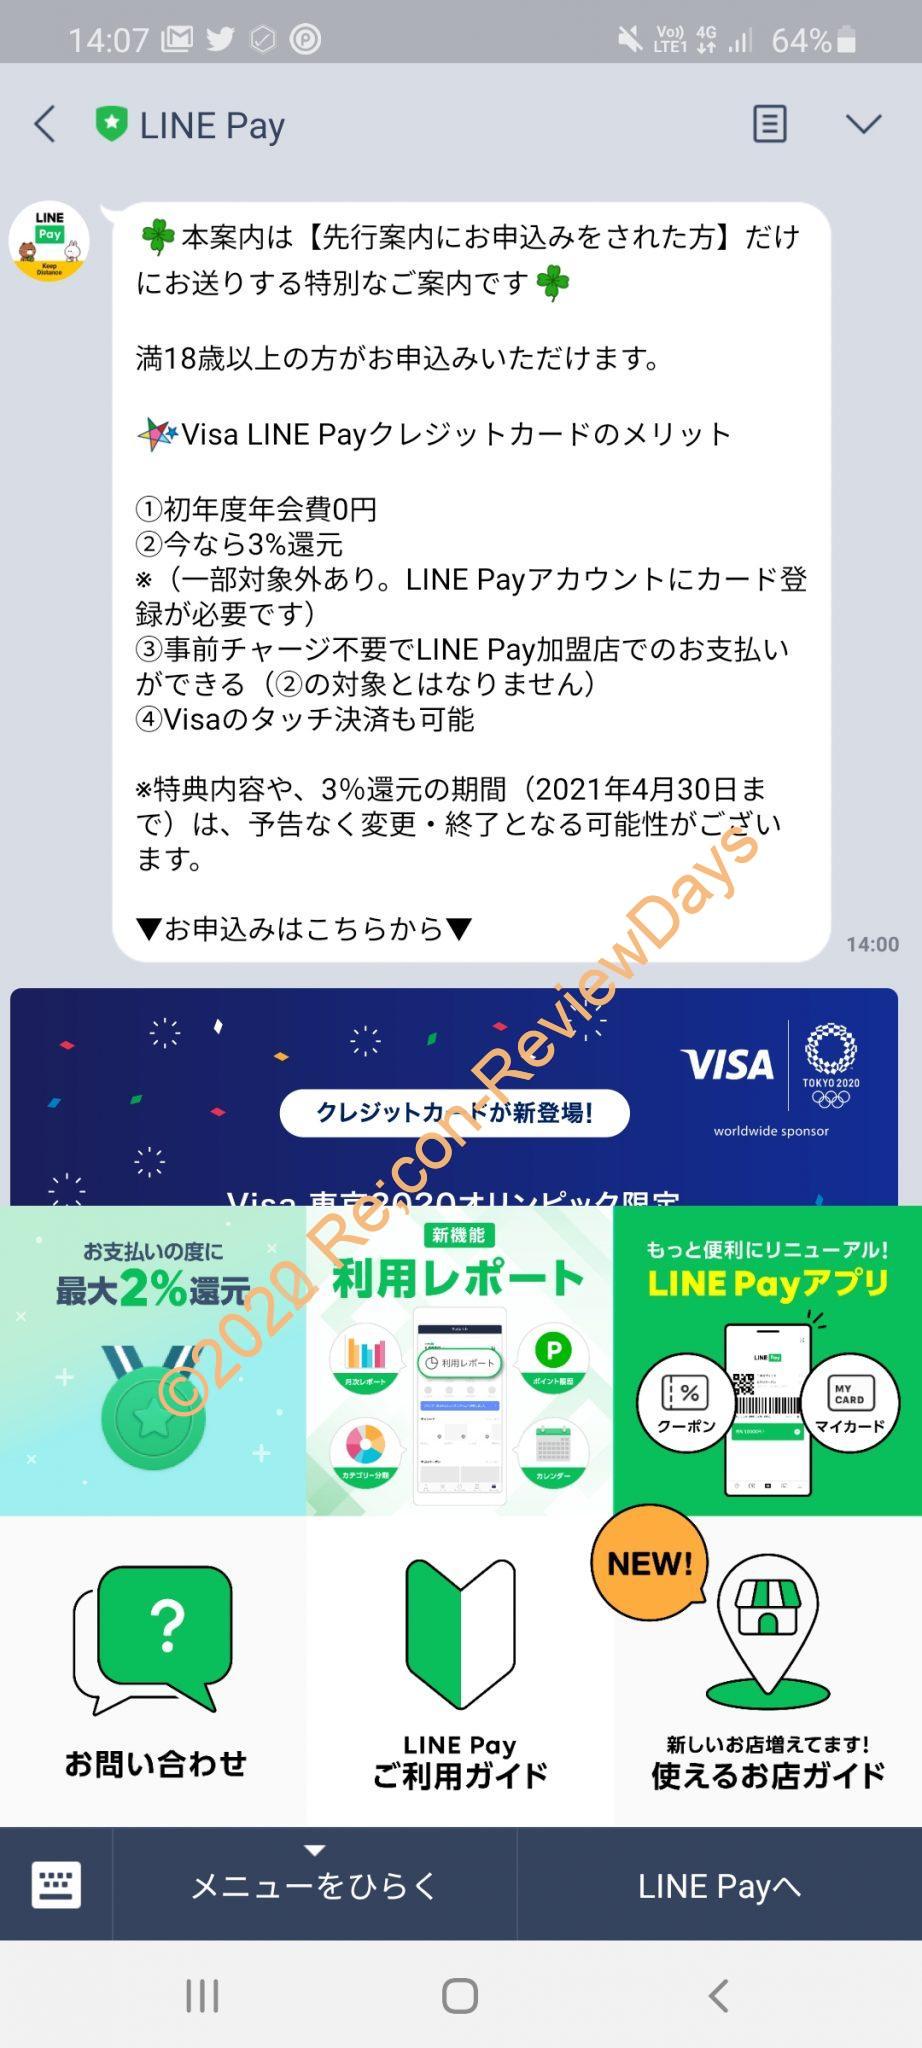 Visa LINE Payクレジットカードの先行申し込みの通知が来ました #LINEPay #LINE #Visa